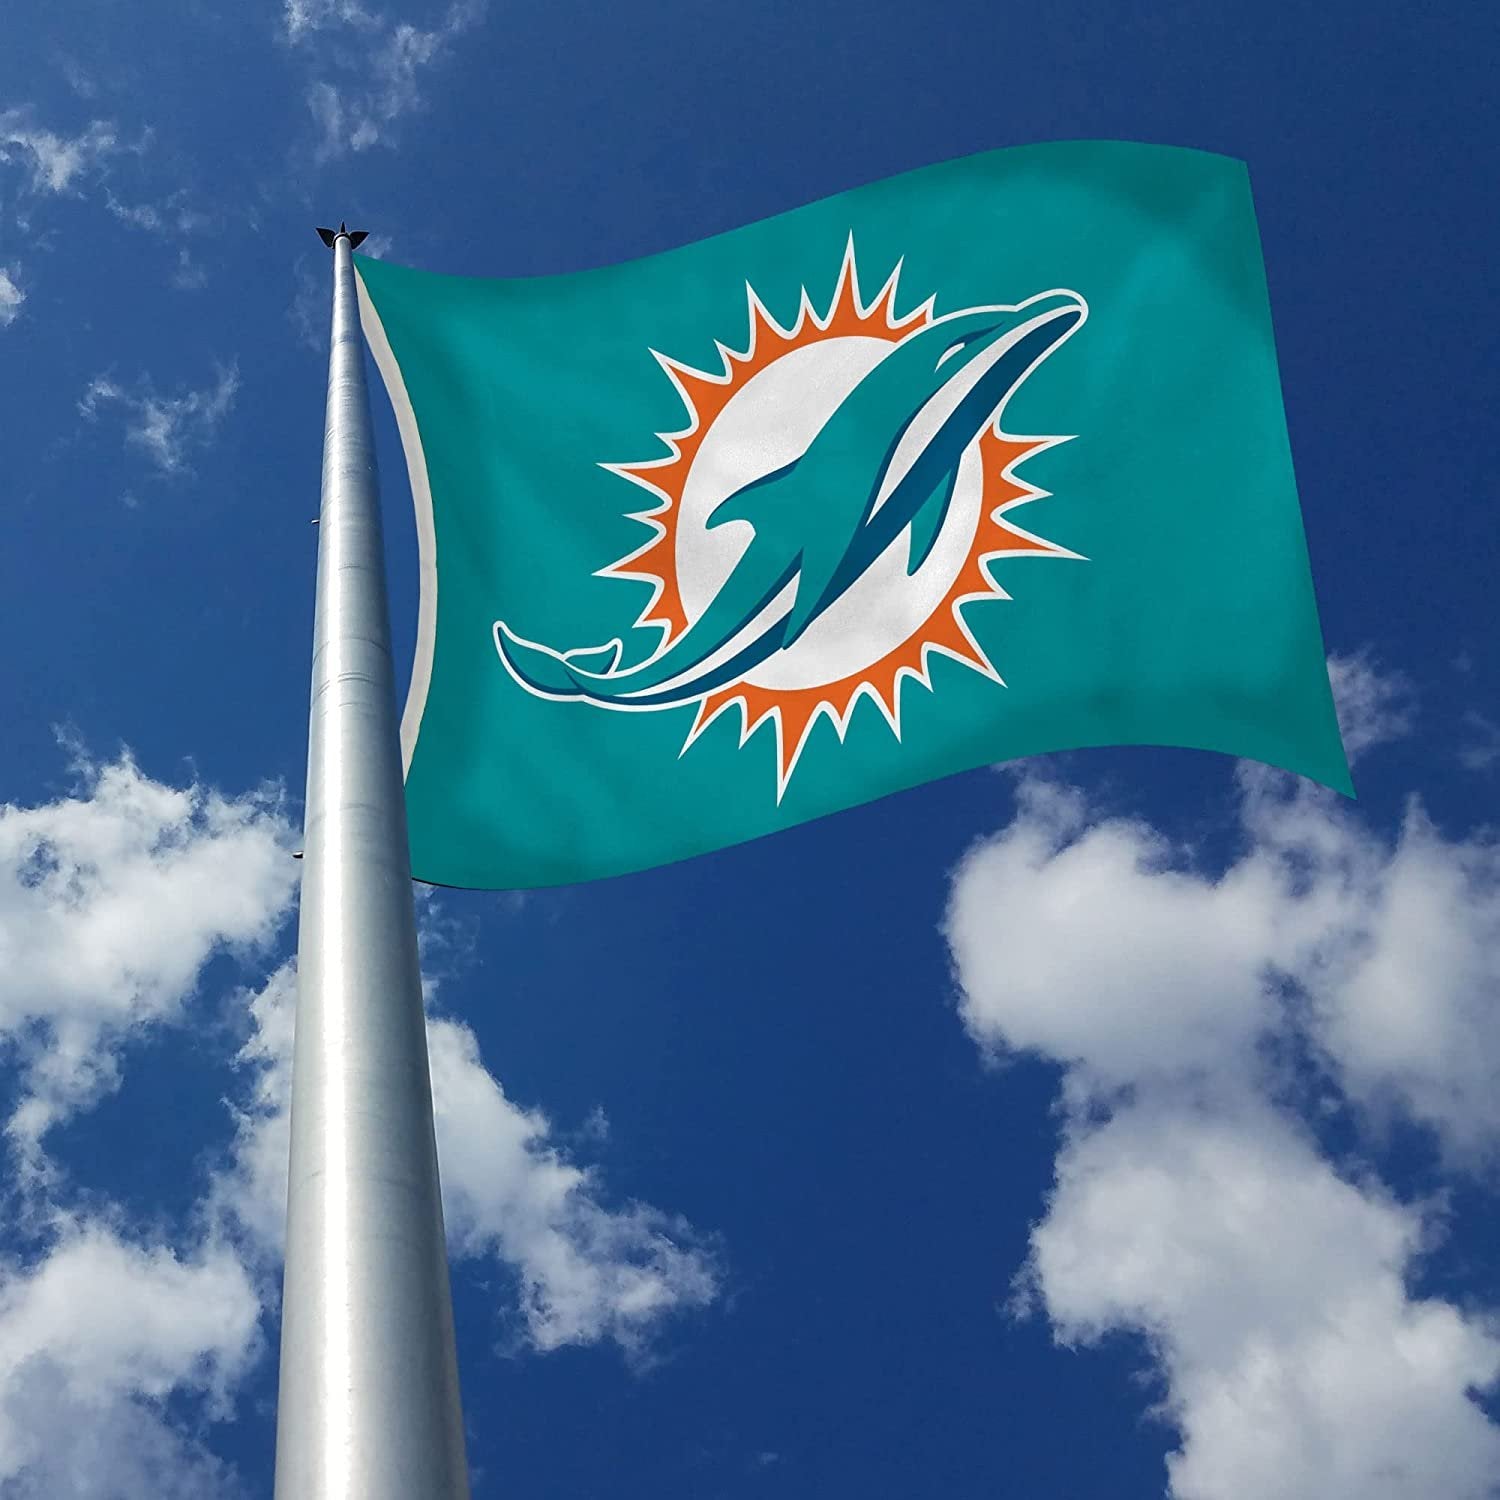 Miami Dolphins Premium 3x5 Foot Flag Banner Metal Grommets Indoor Outdoor